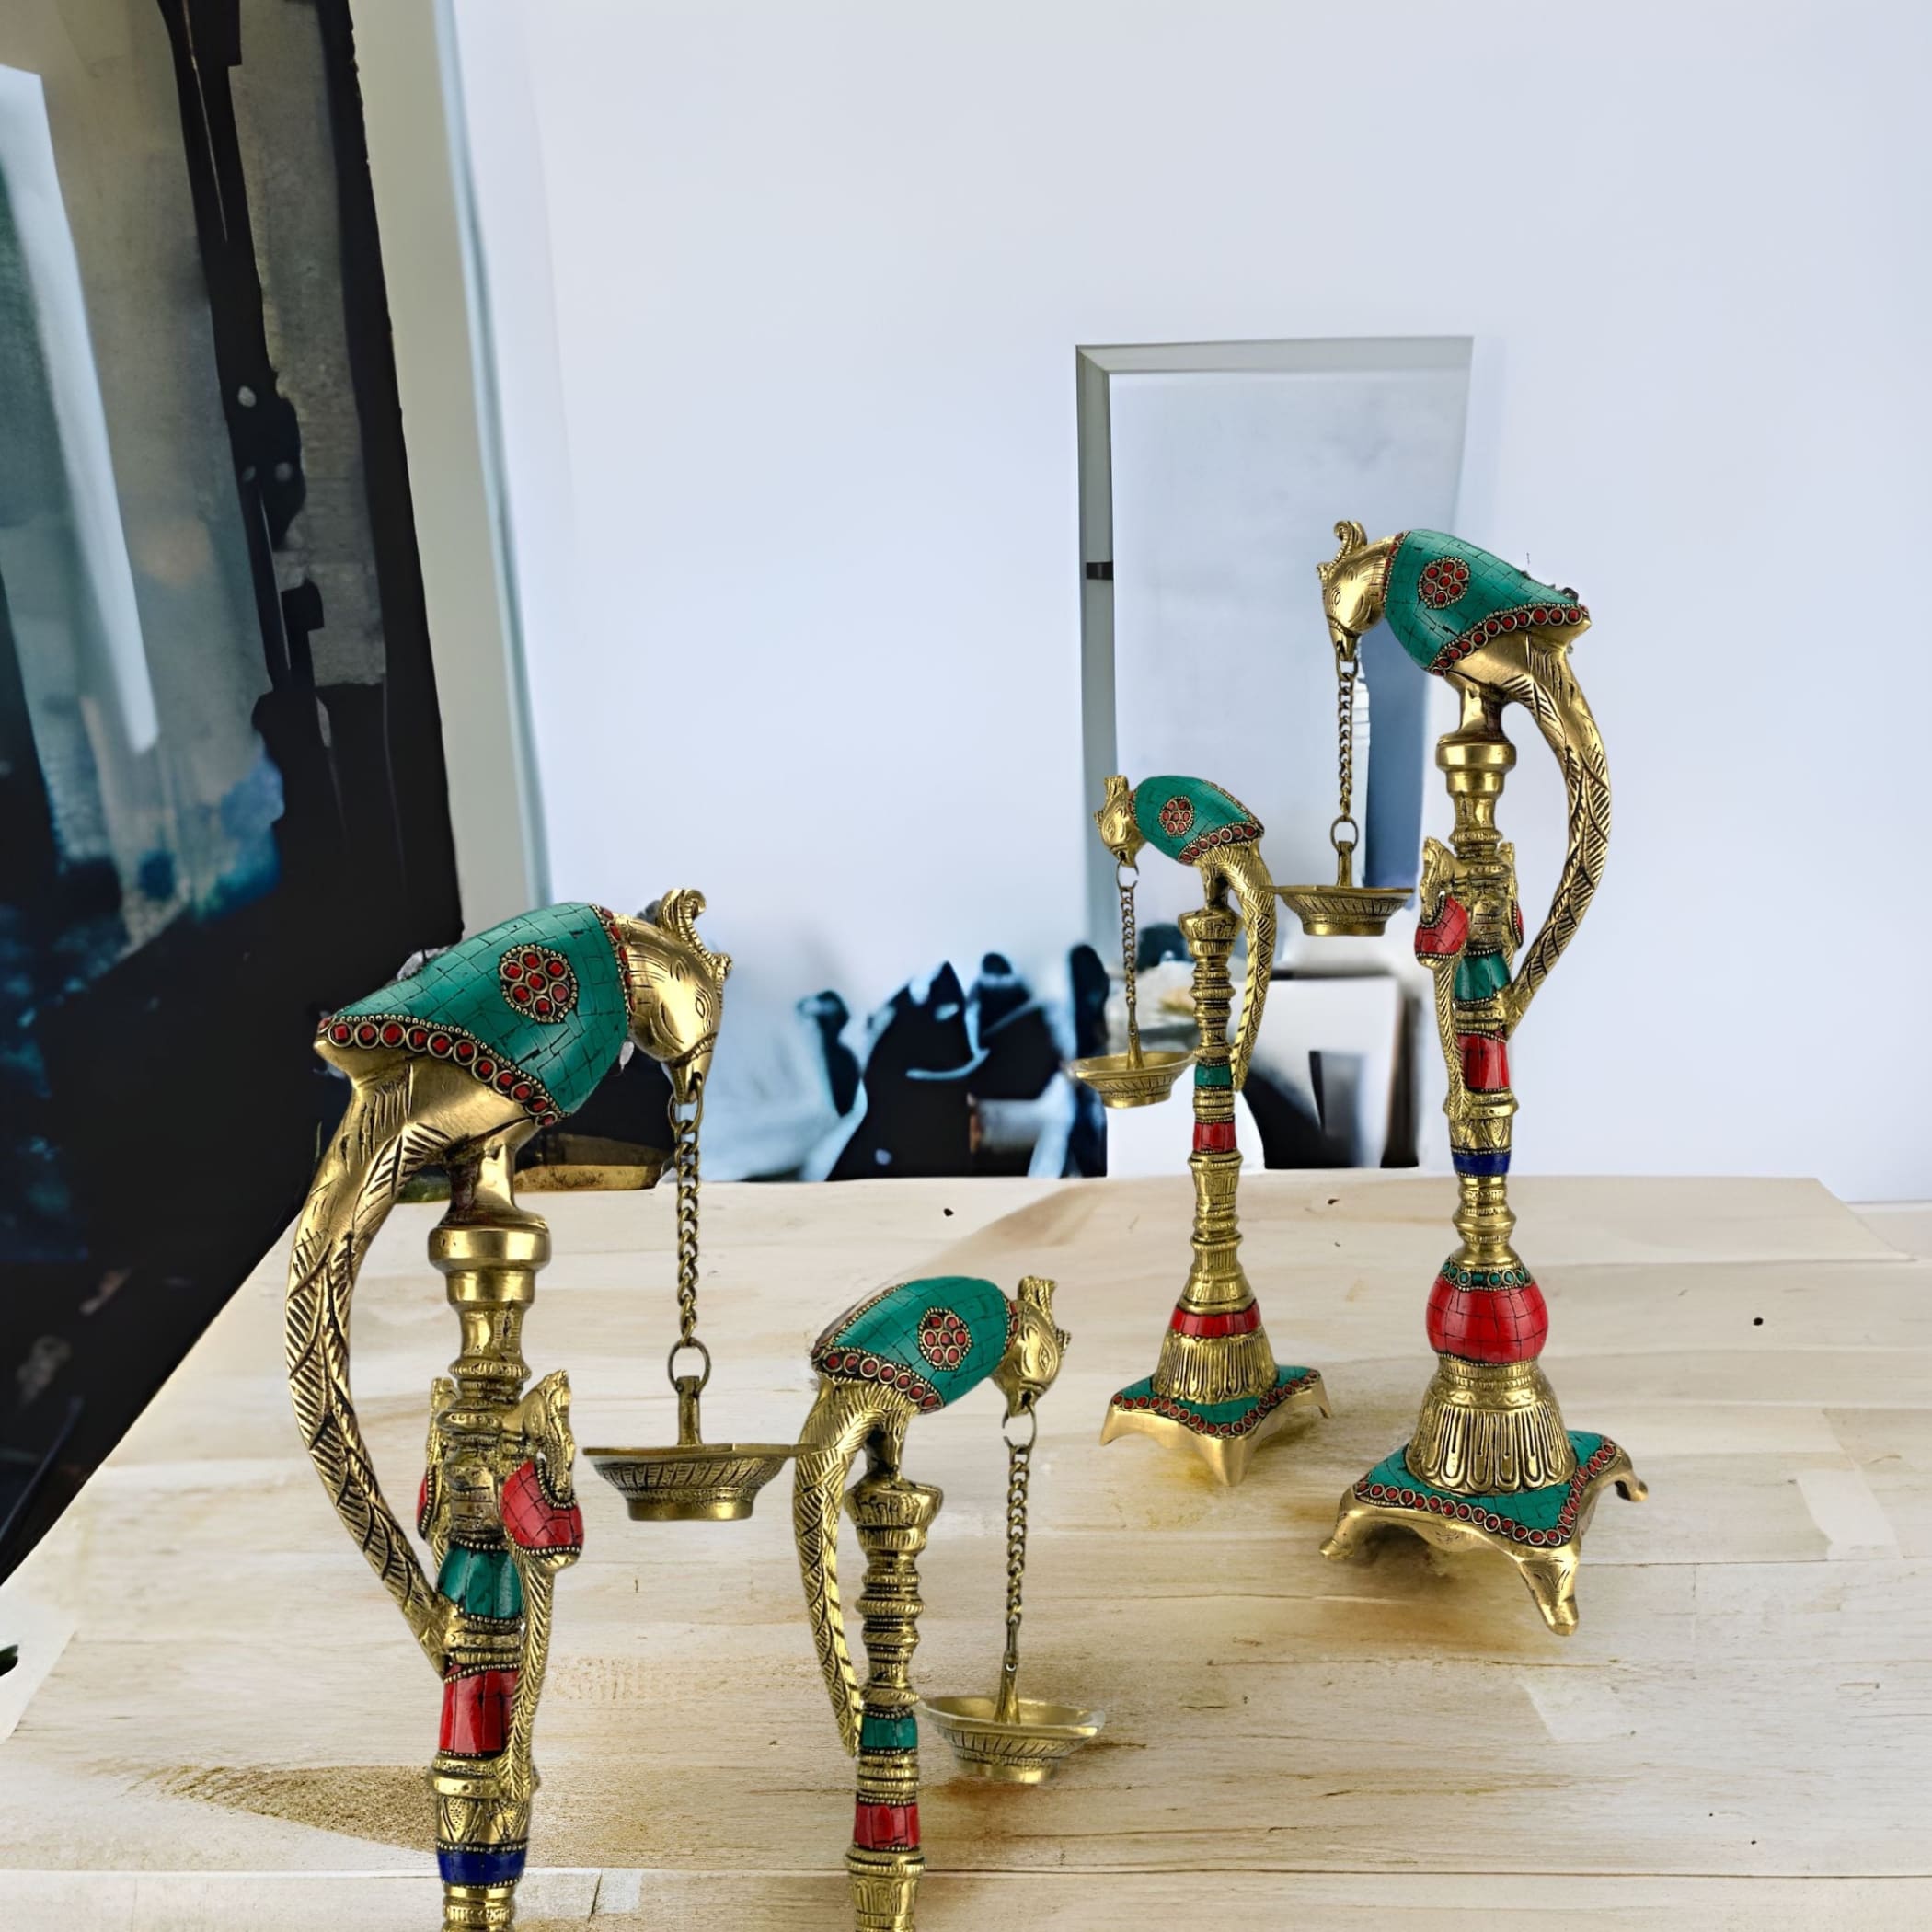 Parrot brass oil tall diya samai diwali decor lamp altar